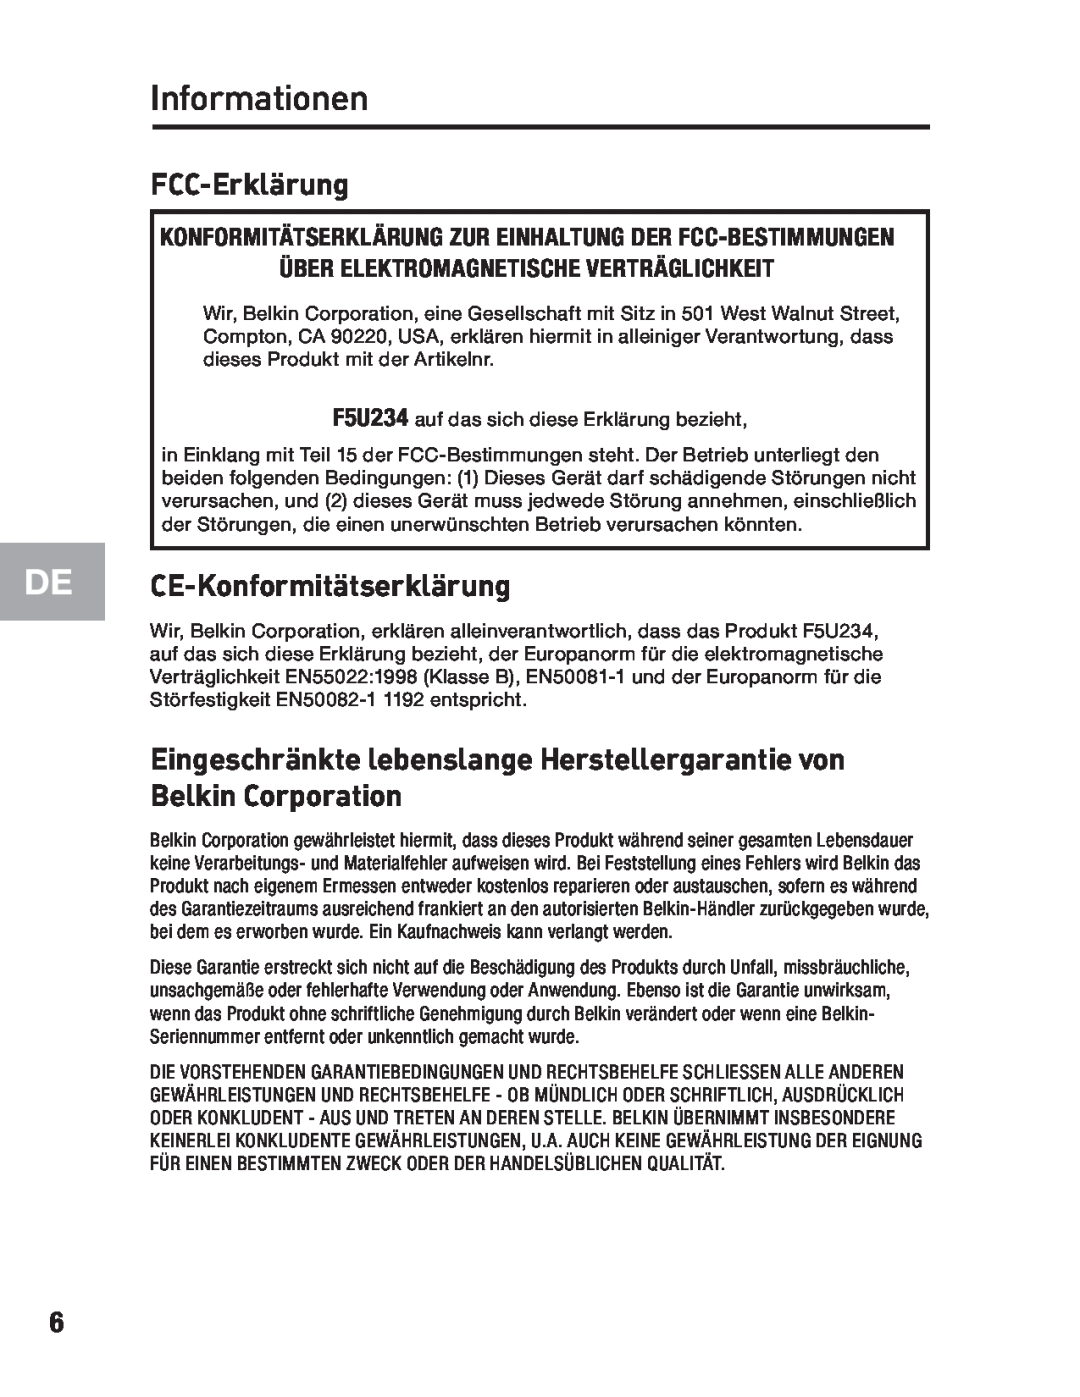 Belkin F5U234 user manual Informationen, FCC-Erklärung, CE-Konformitätserklärung 